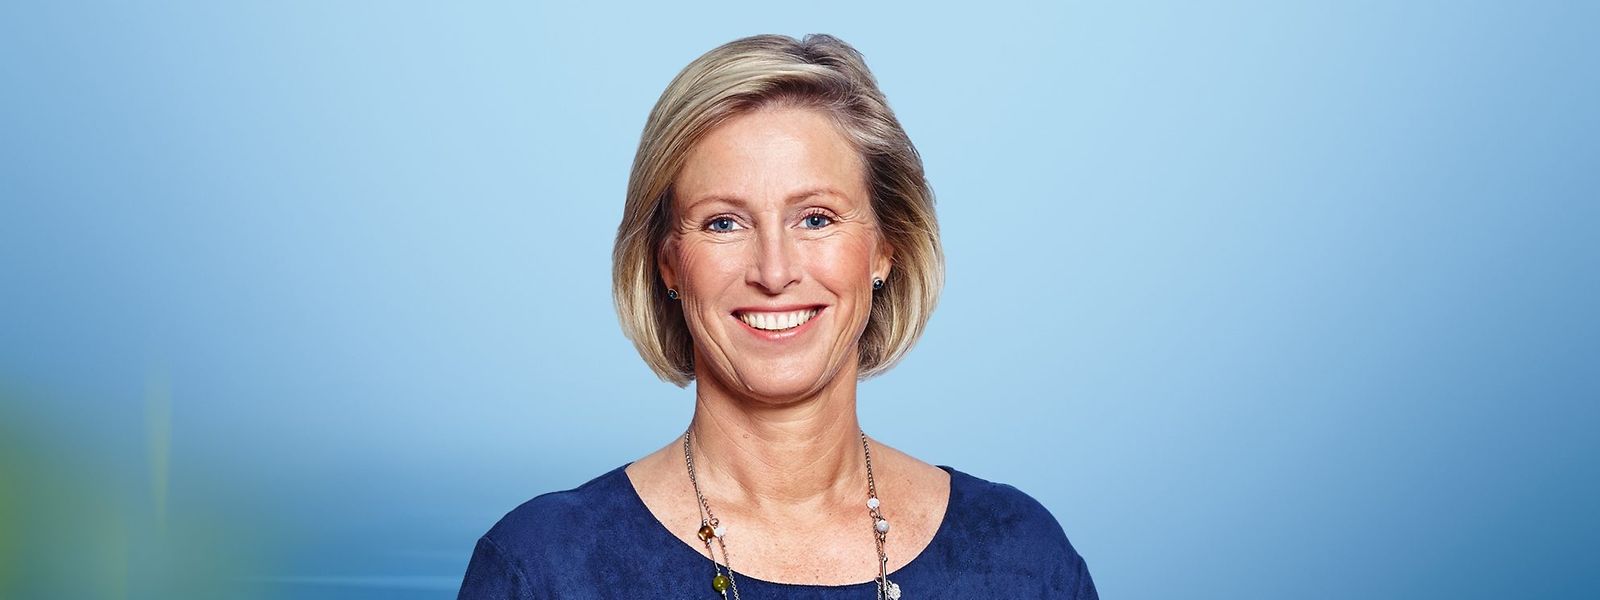 Monique Smit-Thijs ist neue Bürgermeisterin.